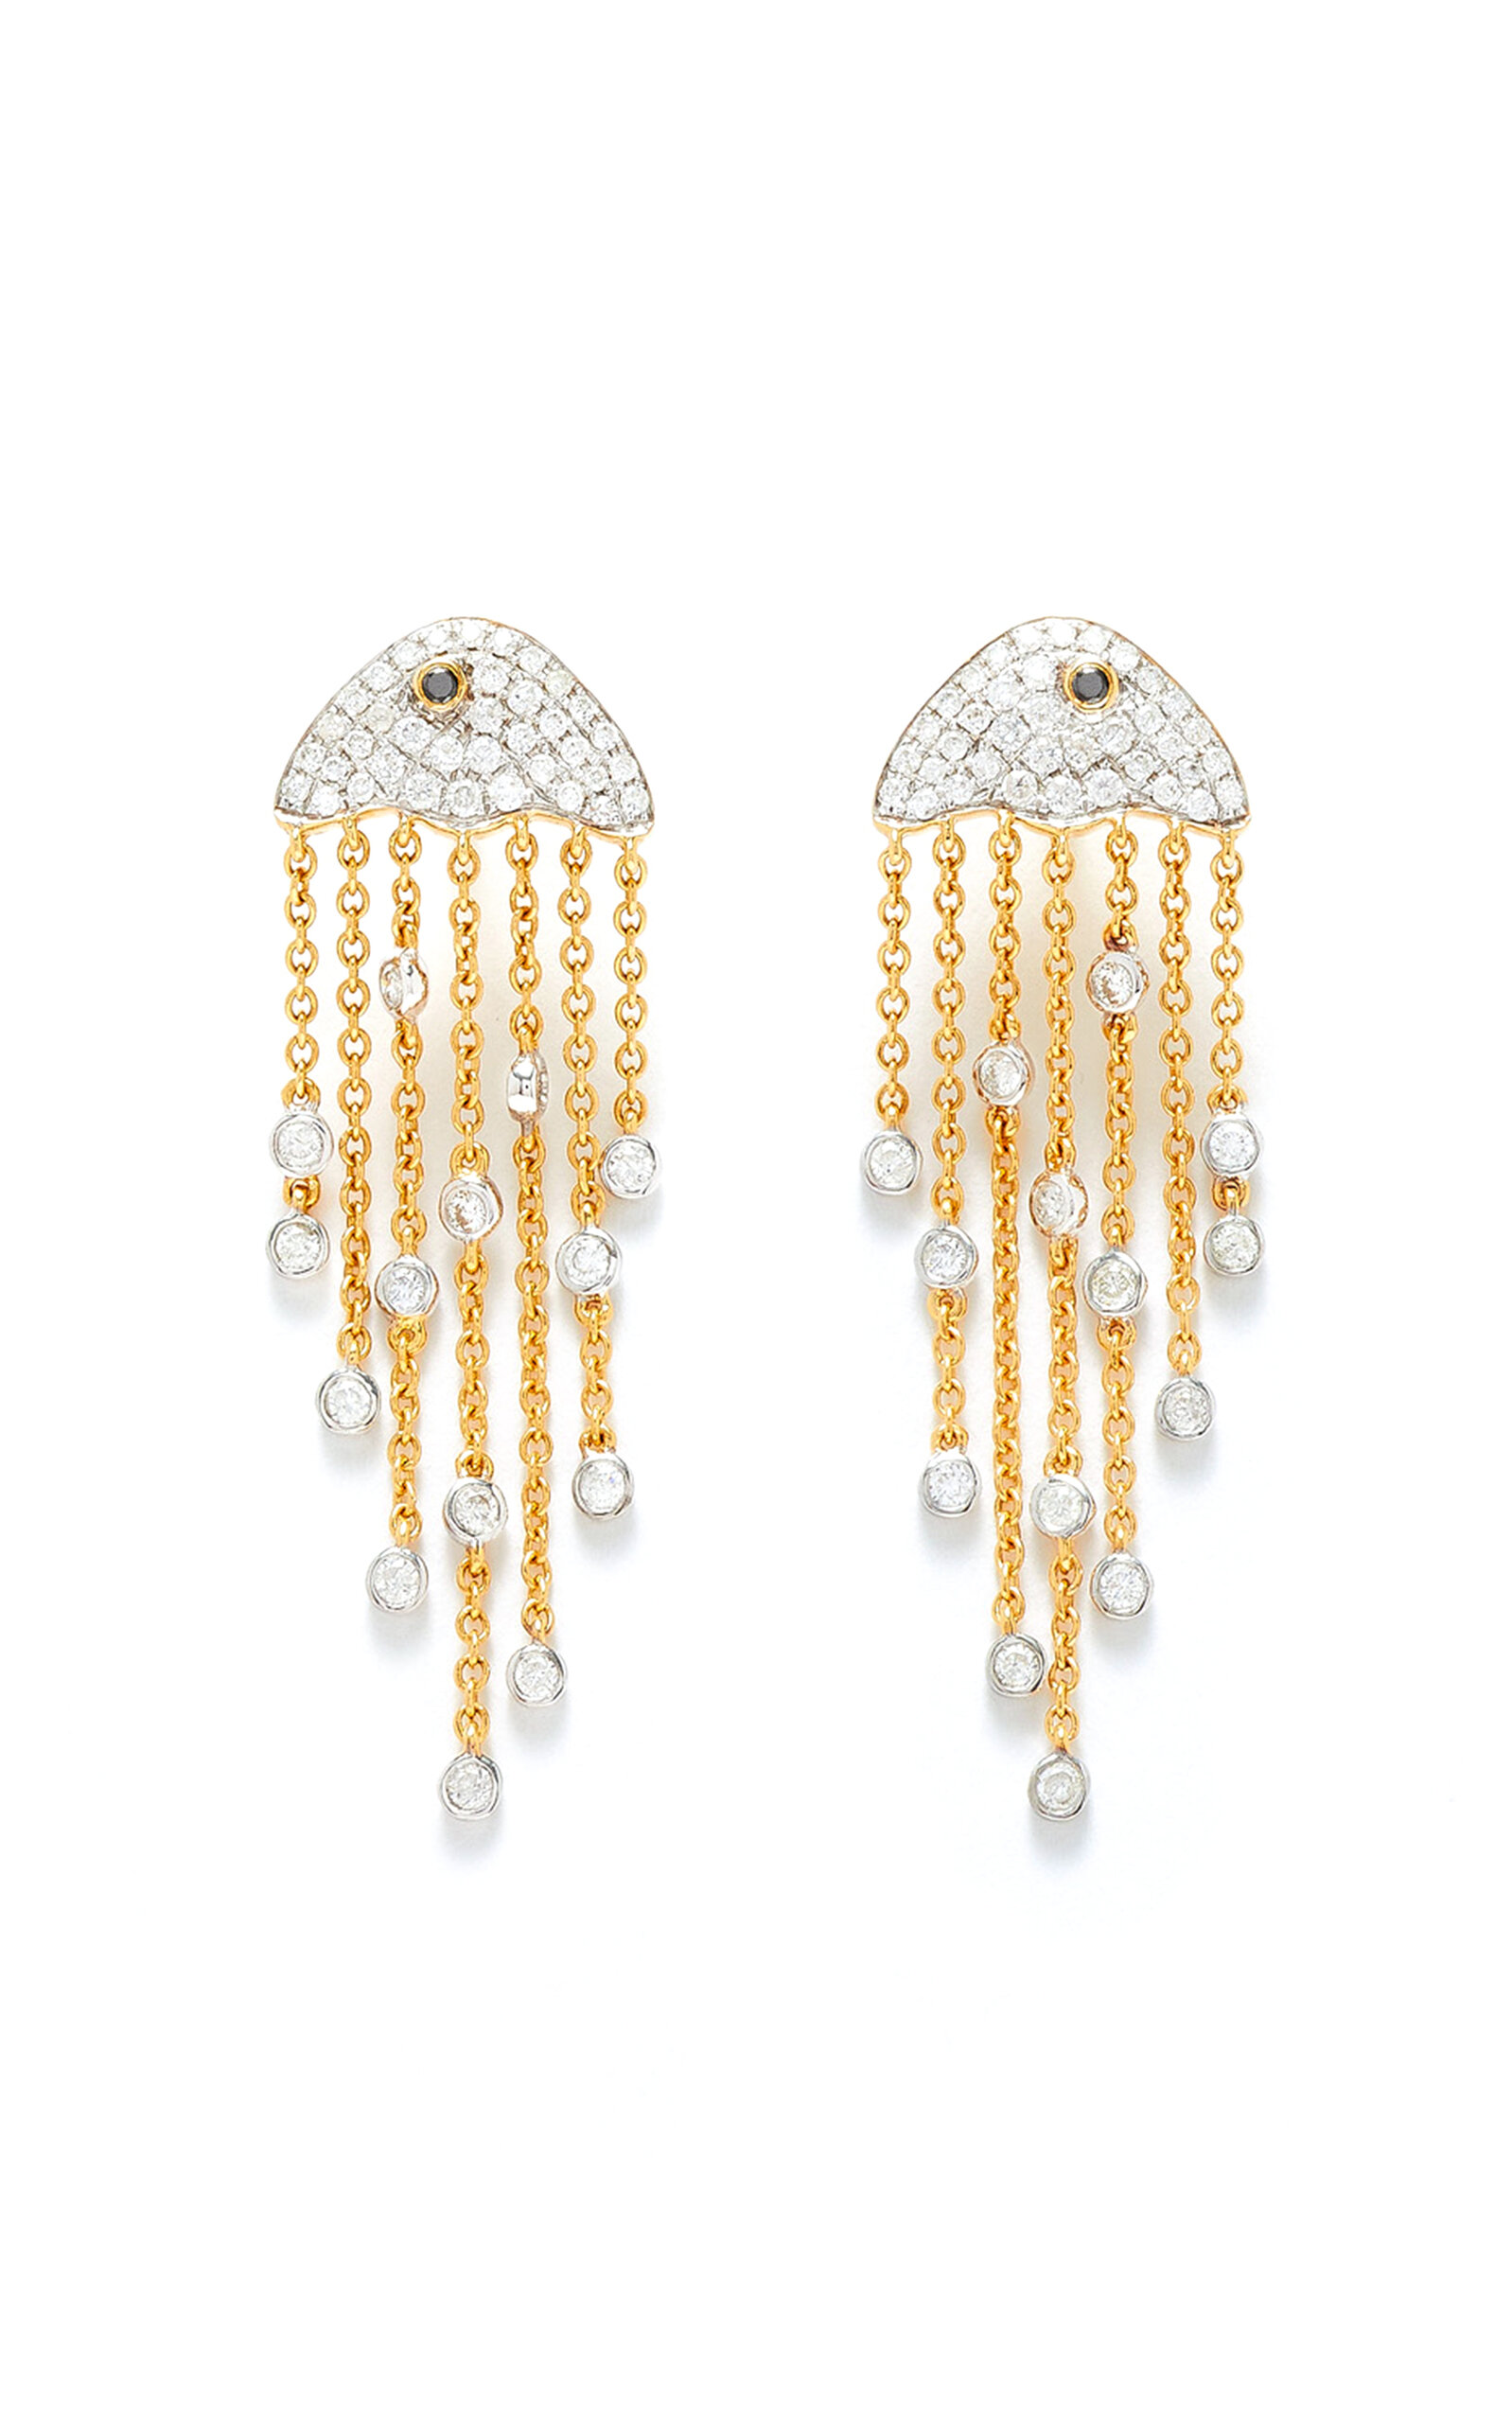 YVONNE LÉON Mini Boule Disco 9-karat yellow and white gold diamond earrings